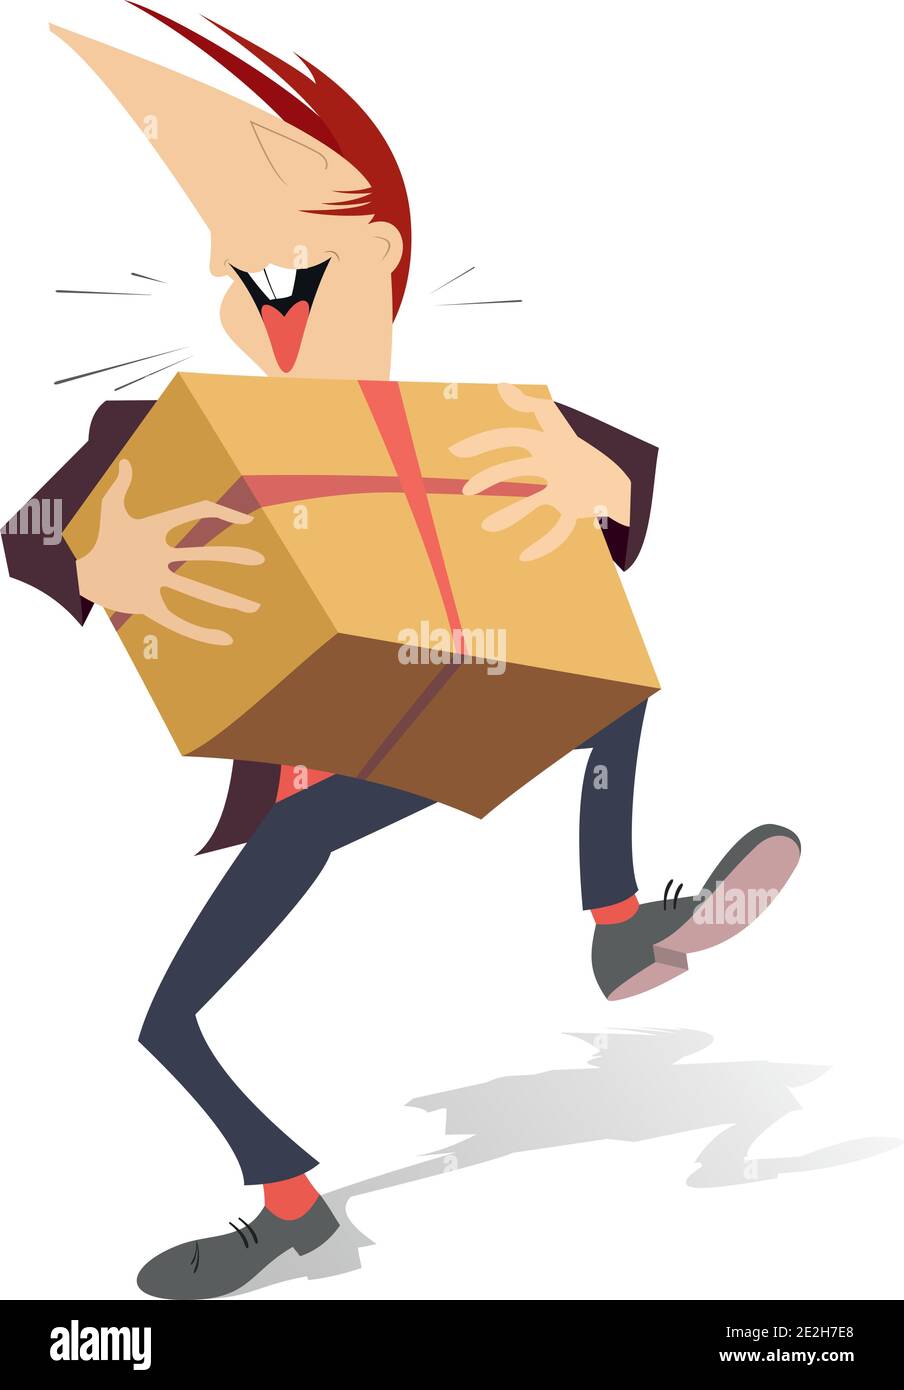 Giovane uomo che porta un'enorme scatola regalo con illustrazione del nastro rosso. Sorridente felice persona che festeggia compleanno o evento importante stile cartone animato isolato Illustrazione Vettoriale